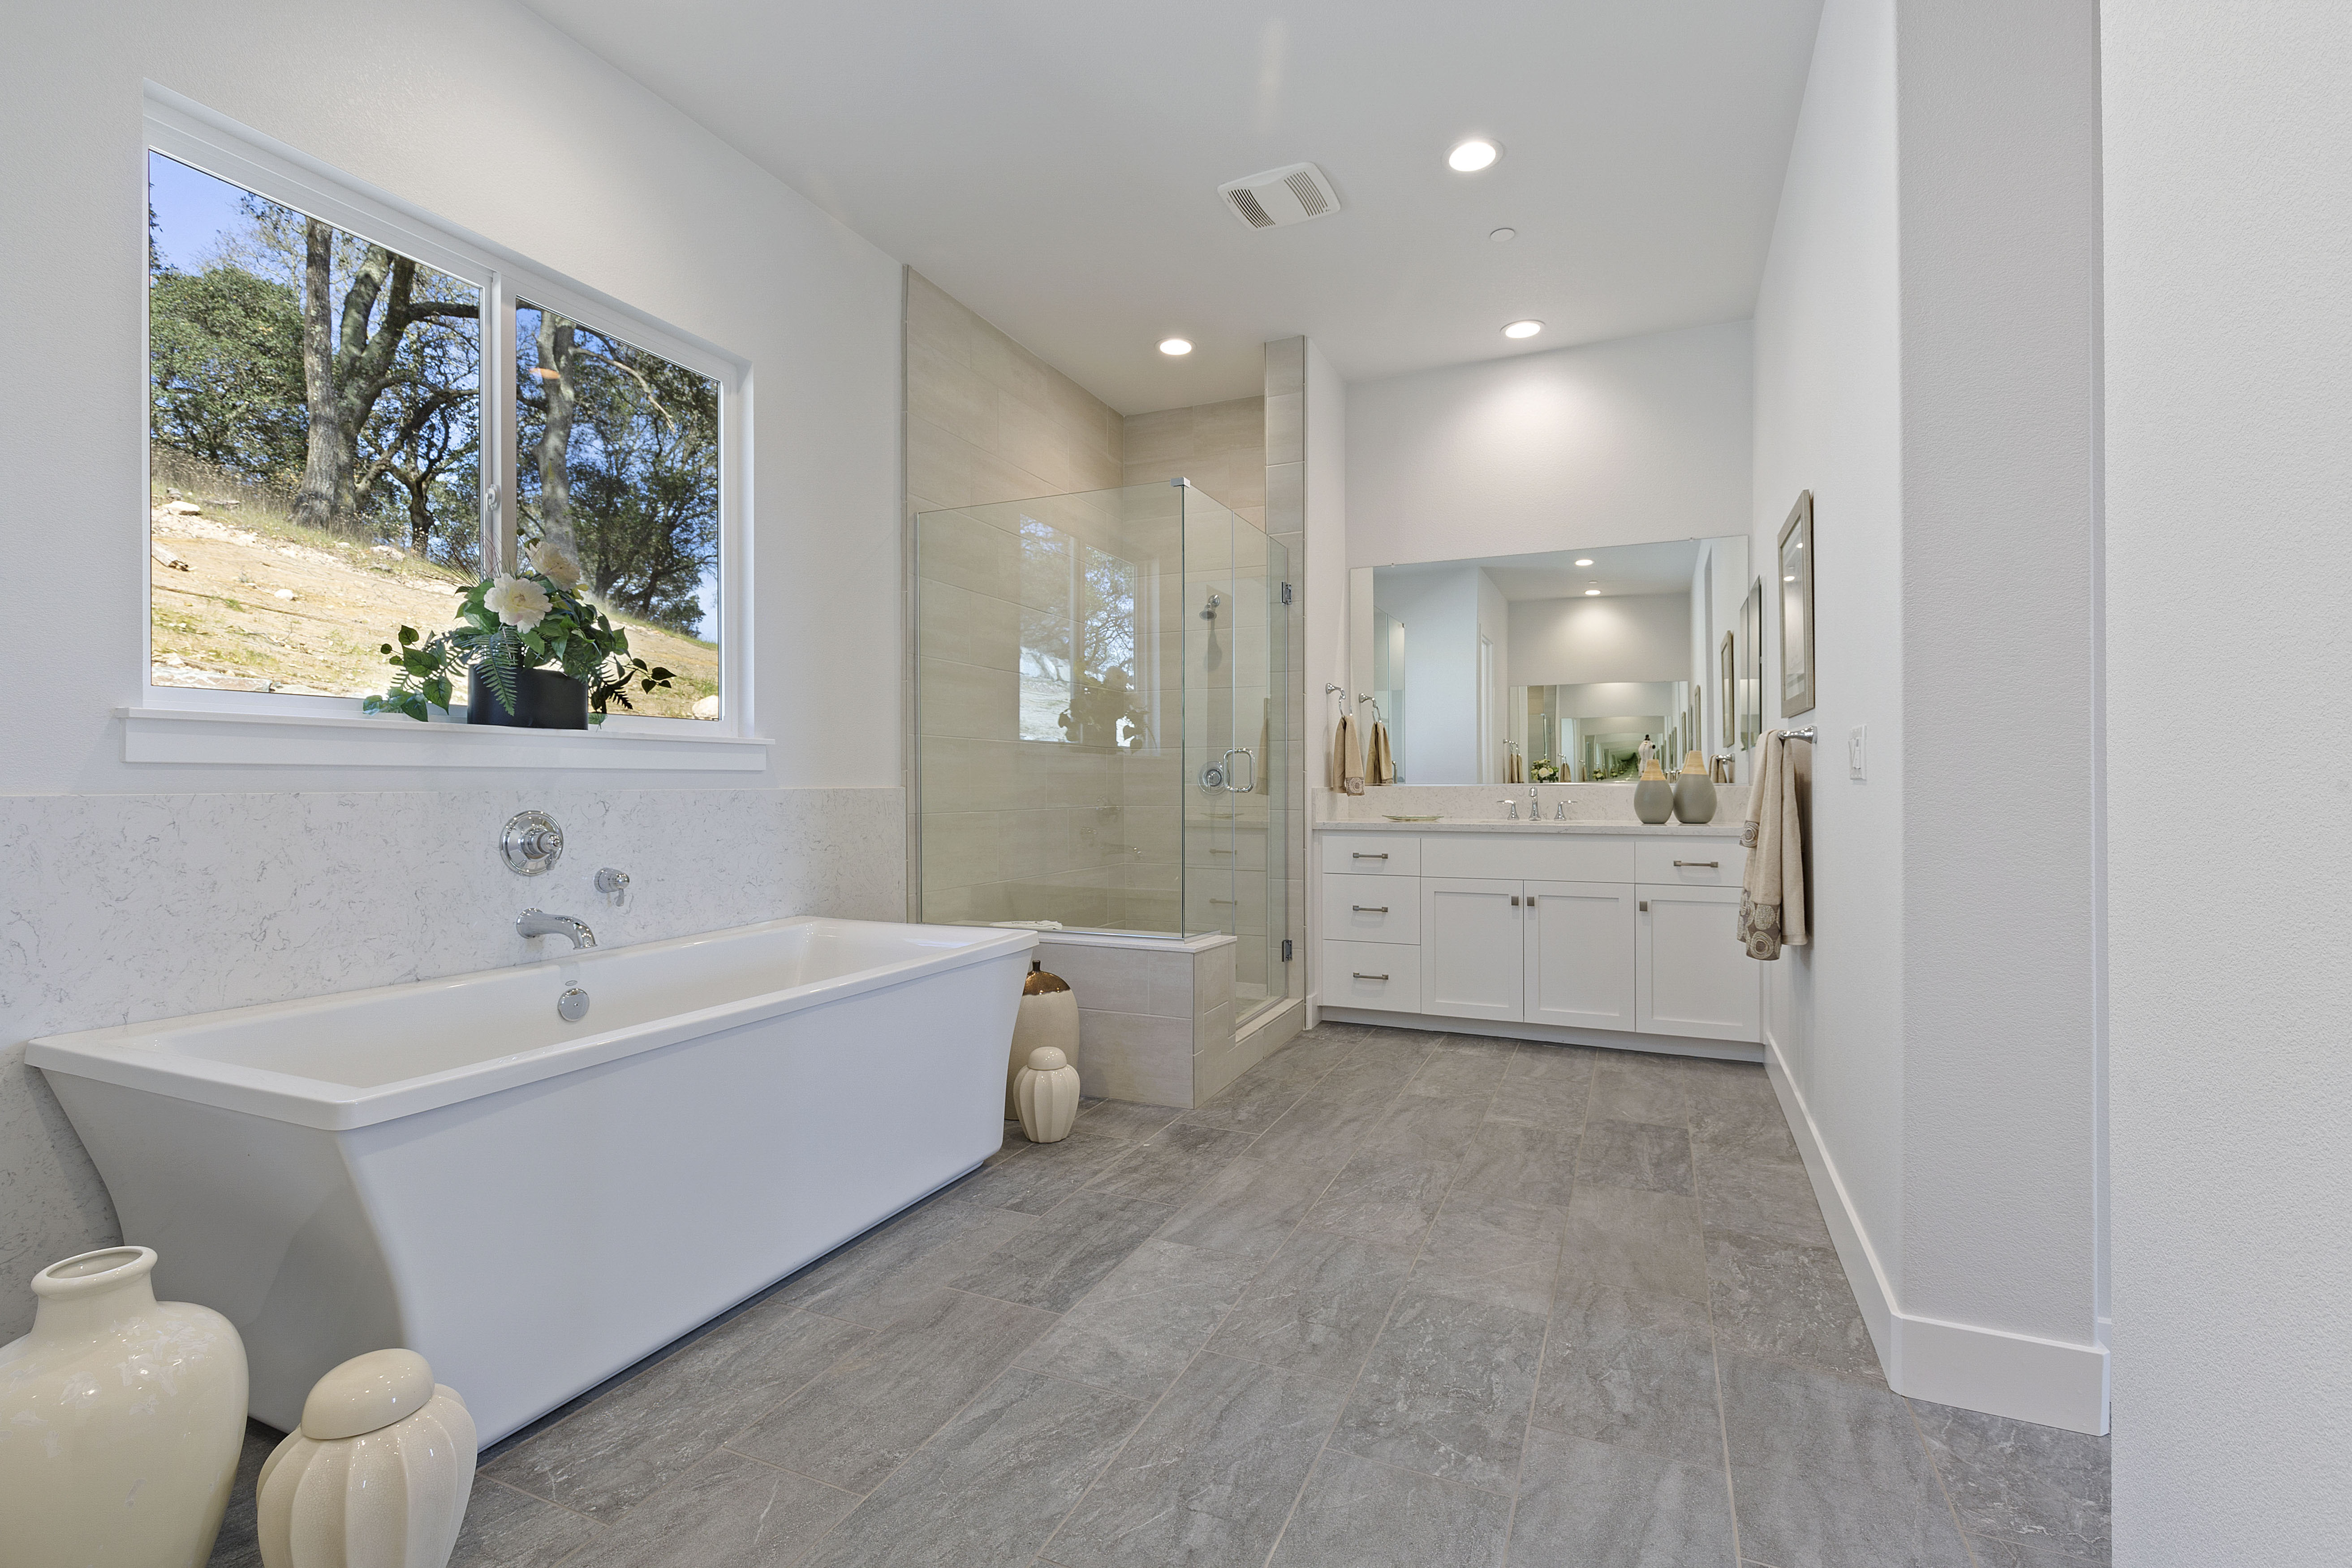 Shower room flooring | Elite Builder Services